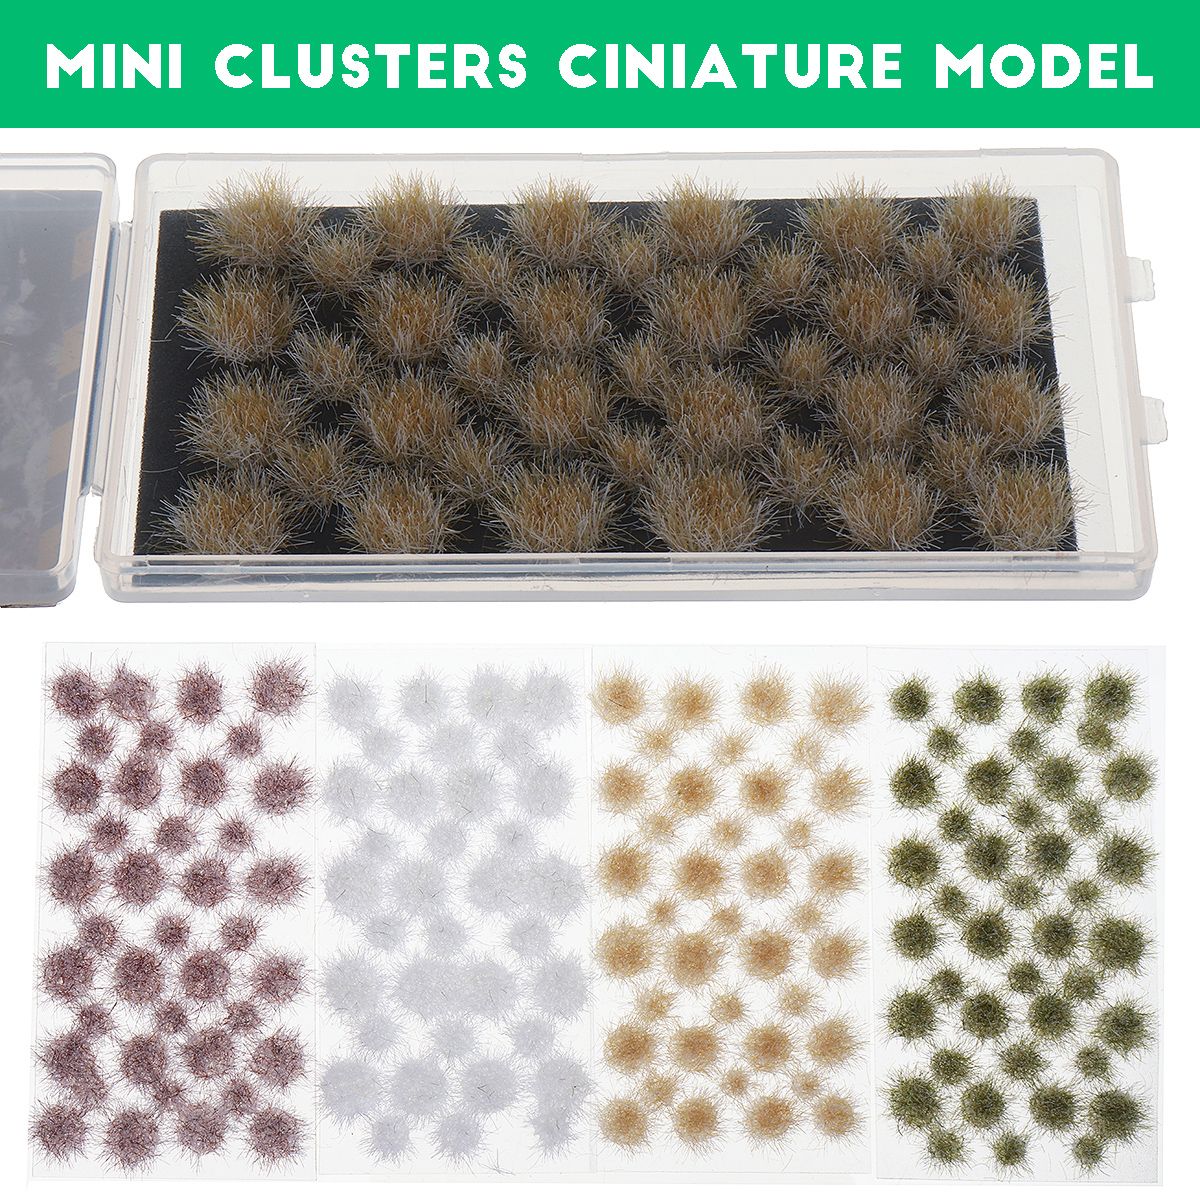 Mini-Clusters-Ciniature-Model-Military-Model-Scenario-Train-Sand-Table-Diy-Modelling-Architecture-Sc-1731307